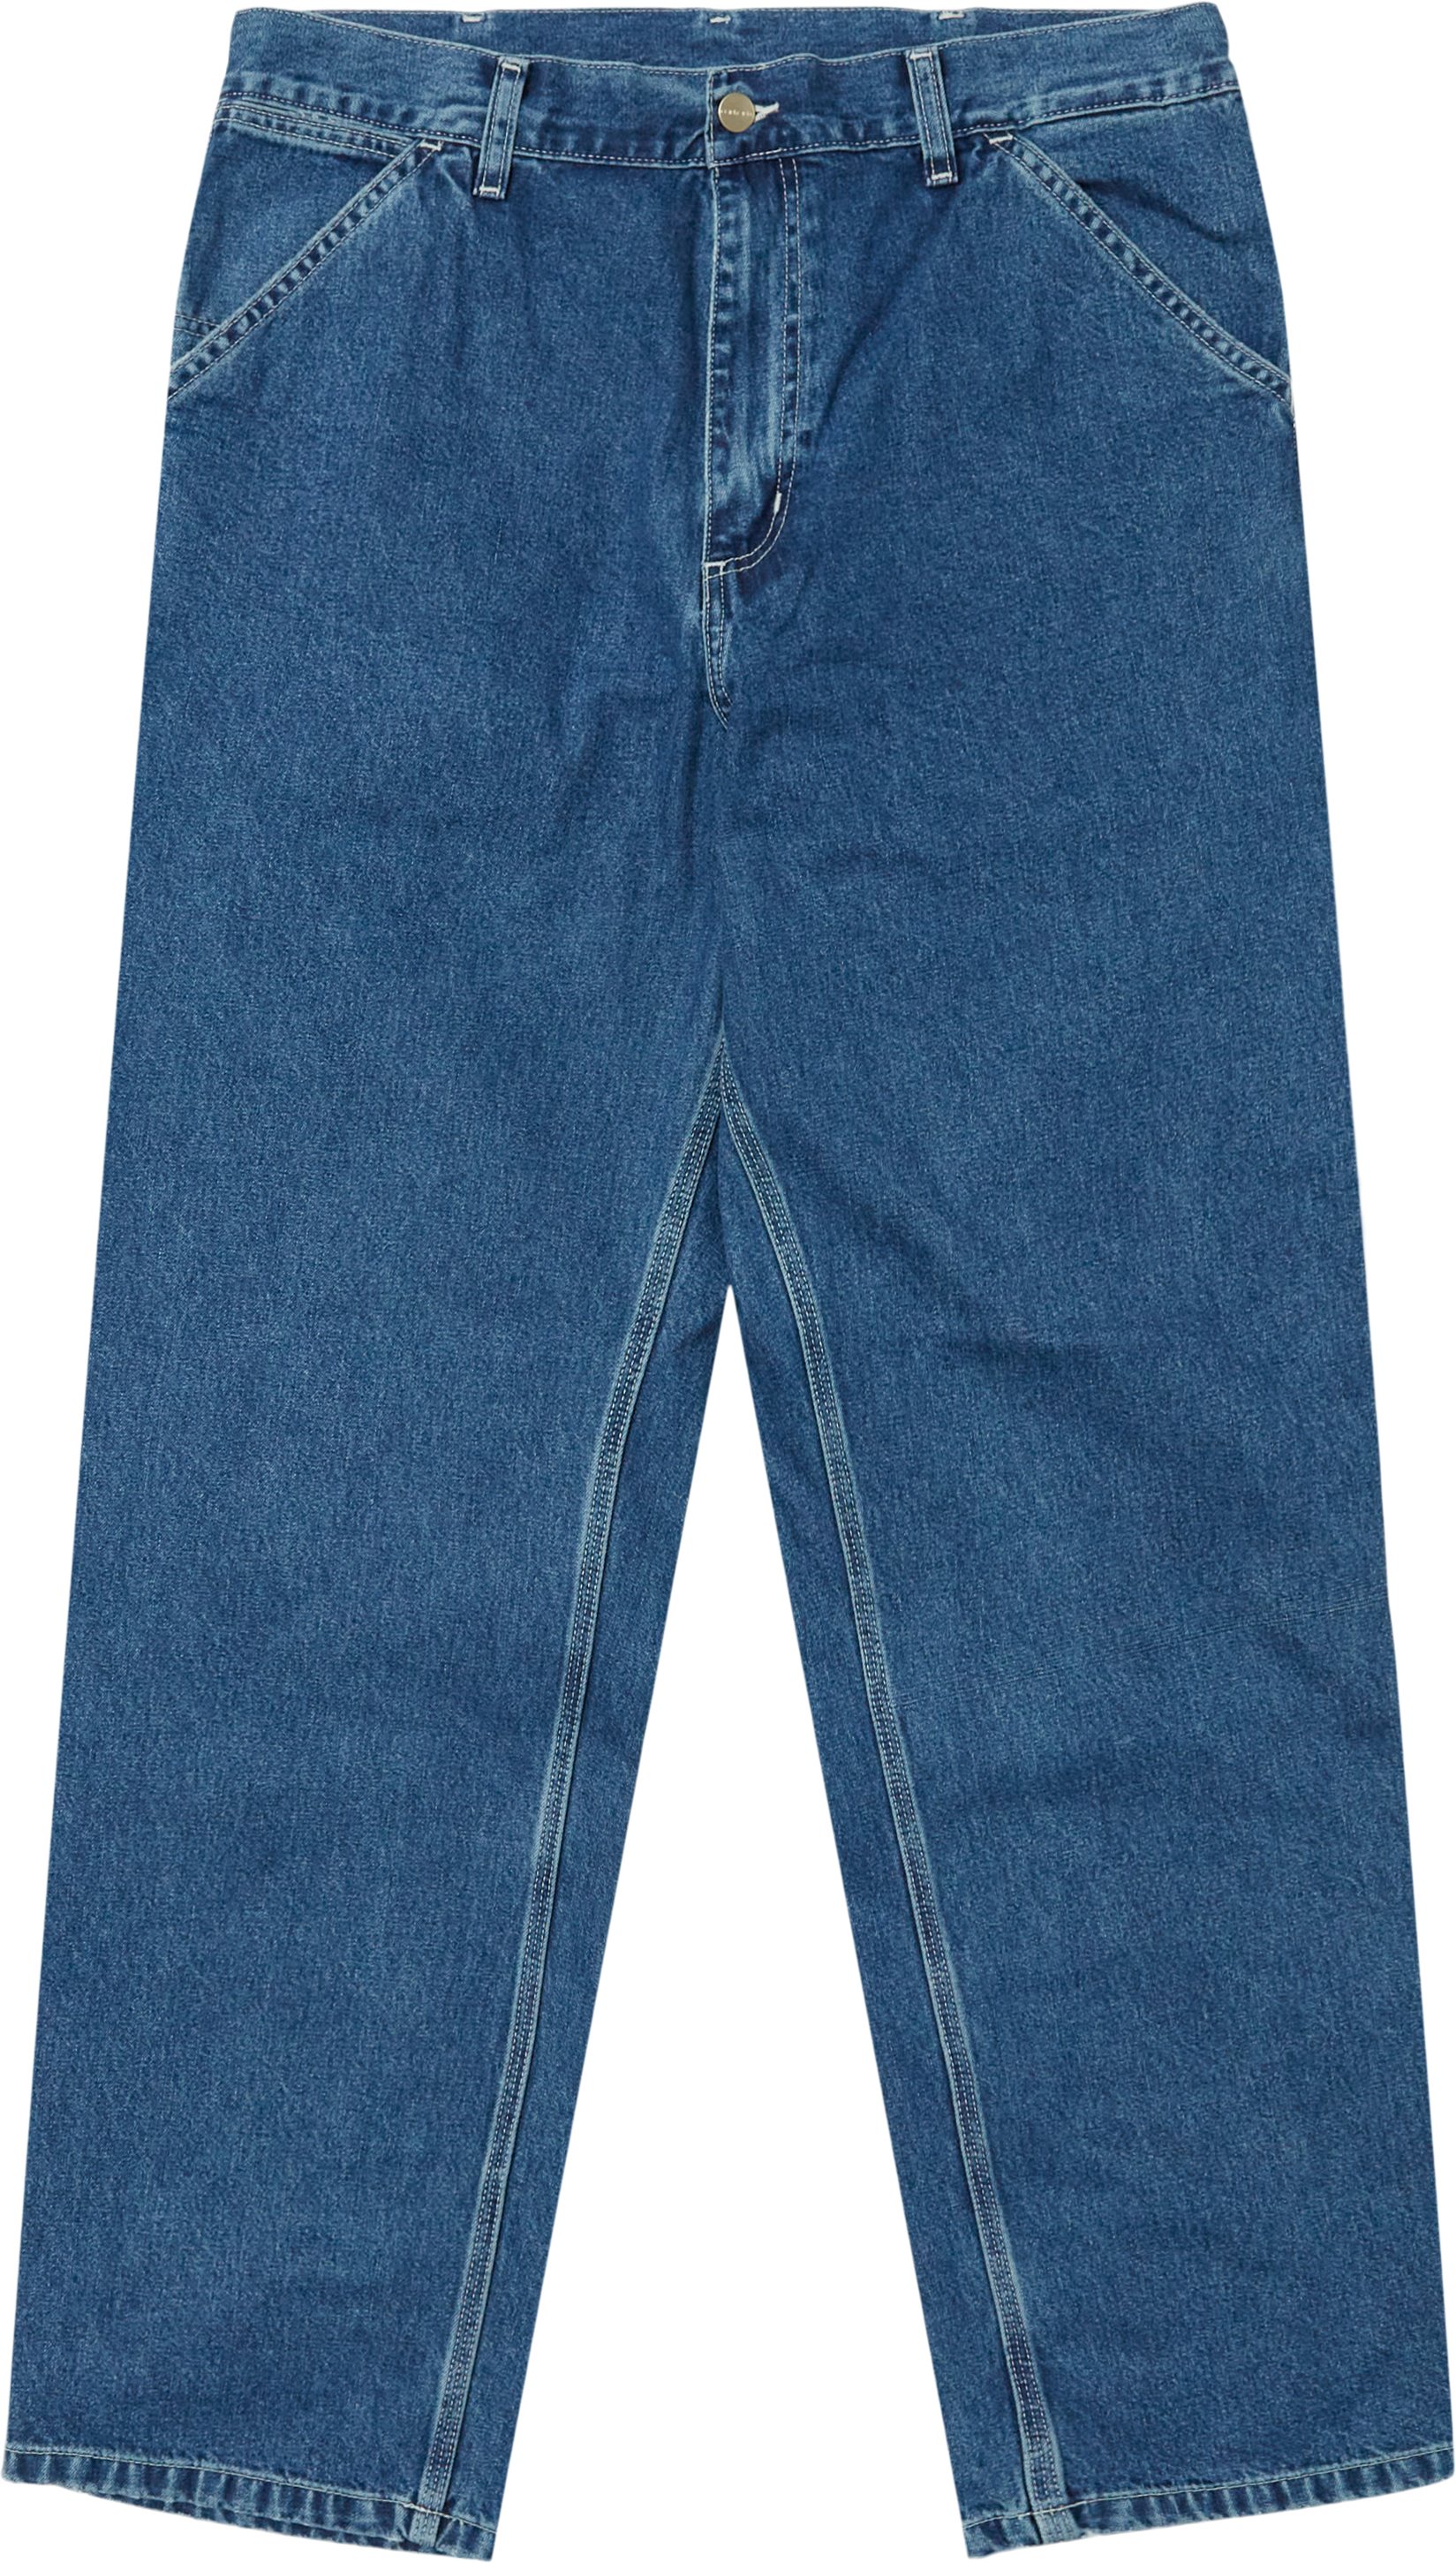 Carhartt WIP Jeans SIMPLE PANT I022947.0106 Denim